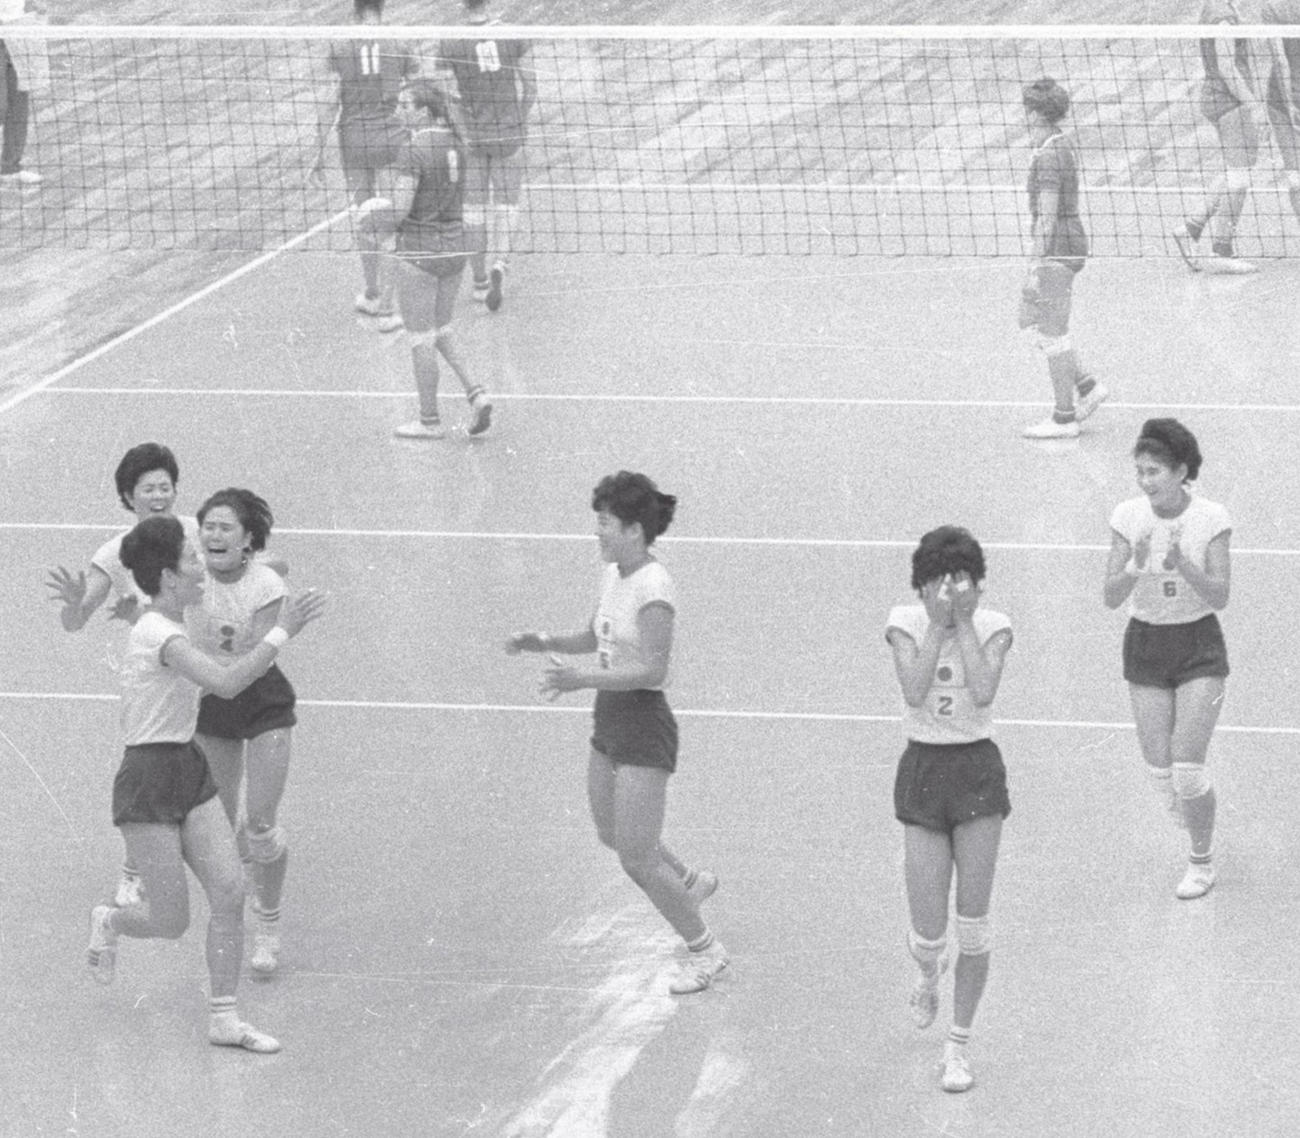 64年10月、東京五輪バレー女子でソ連を破り金メダルが決まった瞬間、泣き出す選手も。左から谷田絹子、河西昌枝、半田百合子、松村好子、宮本恵美子、磯辺サタ